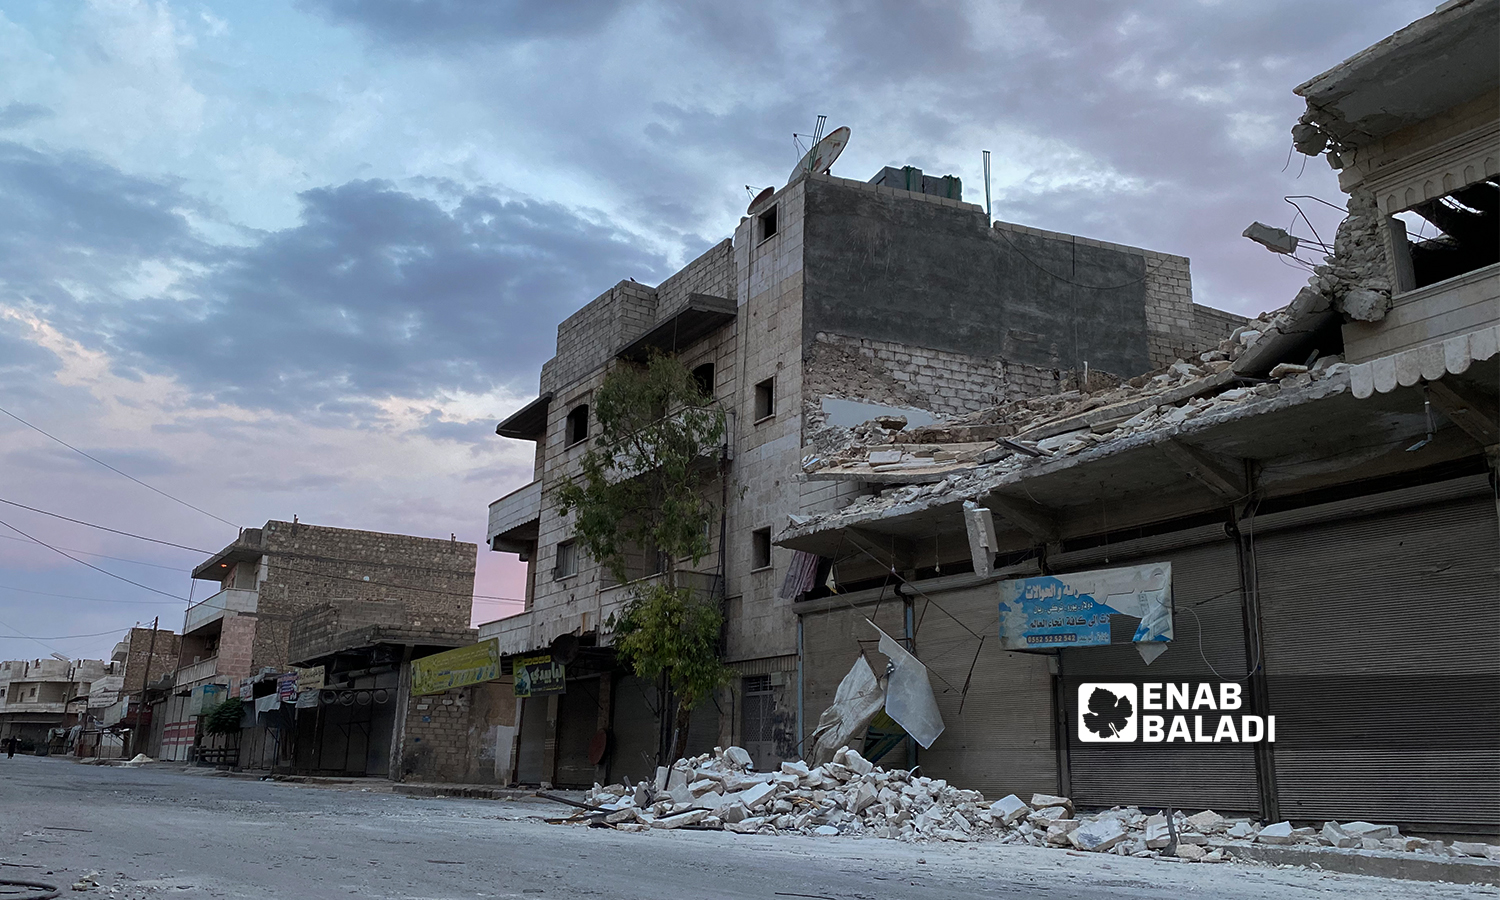 دمار جزئي بأحد الأبنية السكنية بعد تعرضه قصف مدفعي استهدف مدينة الباب - 5 آب 2021 (عنب بلدي / عاصم ملحم)